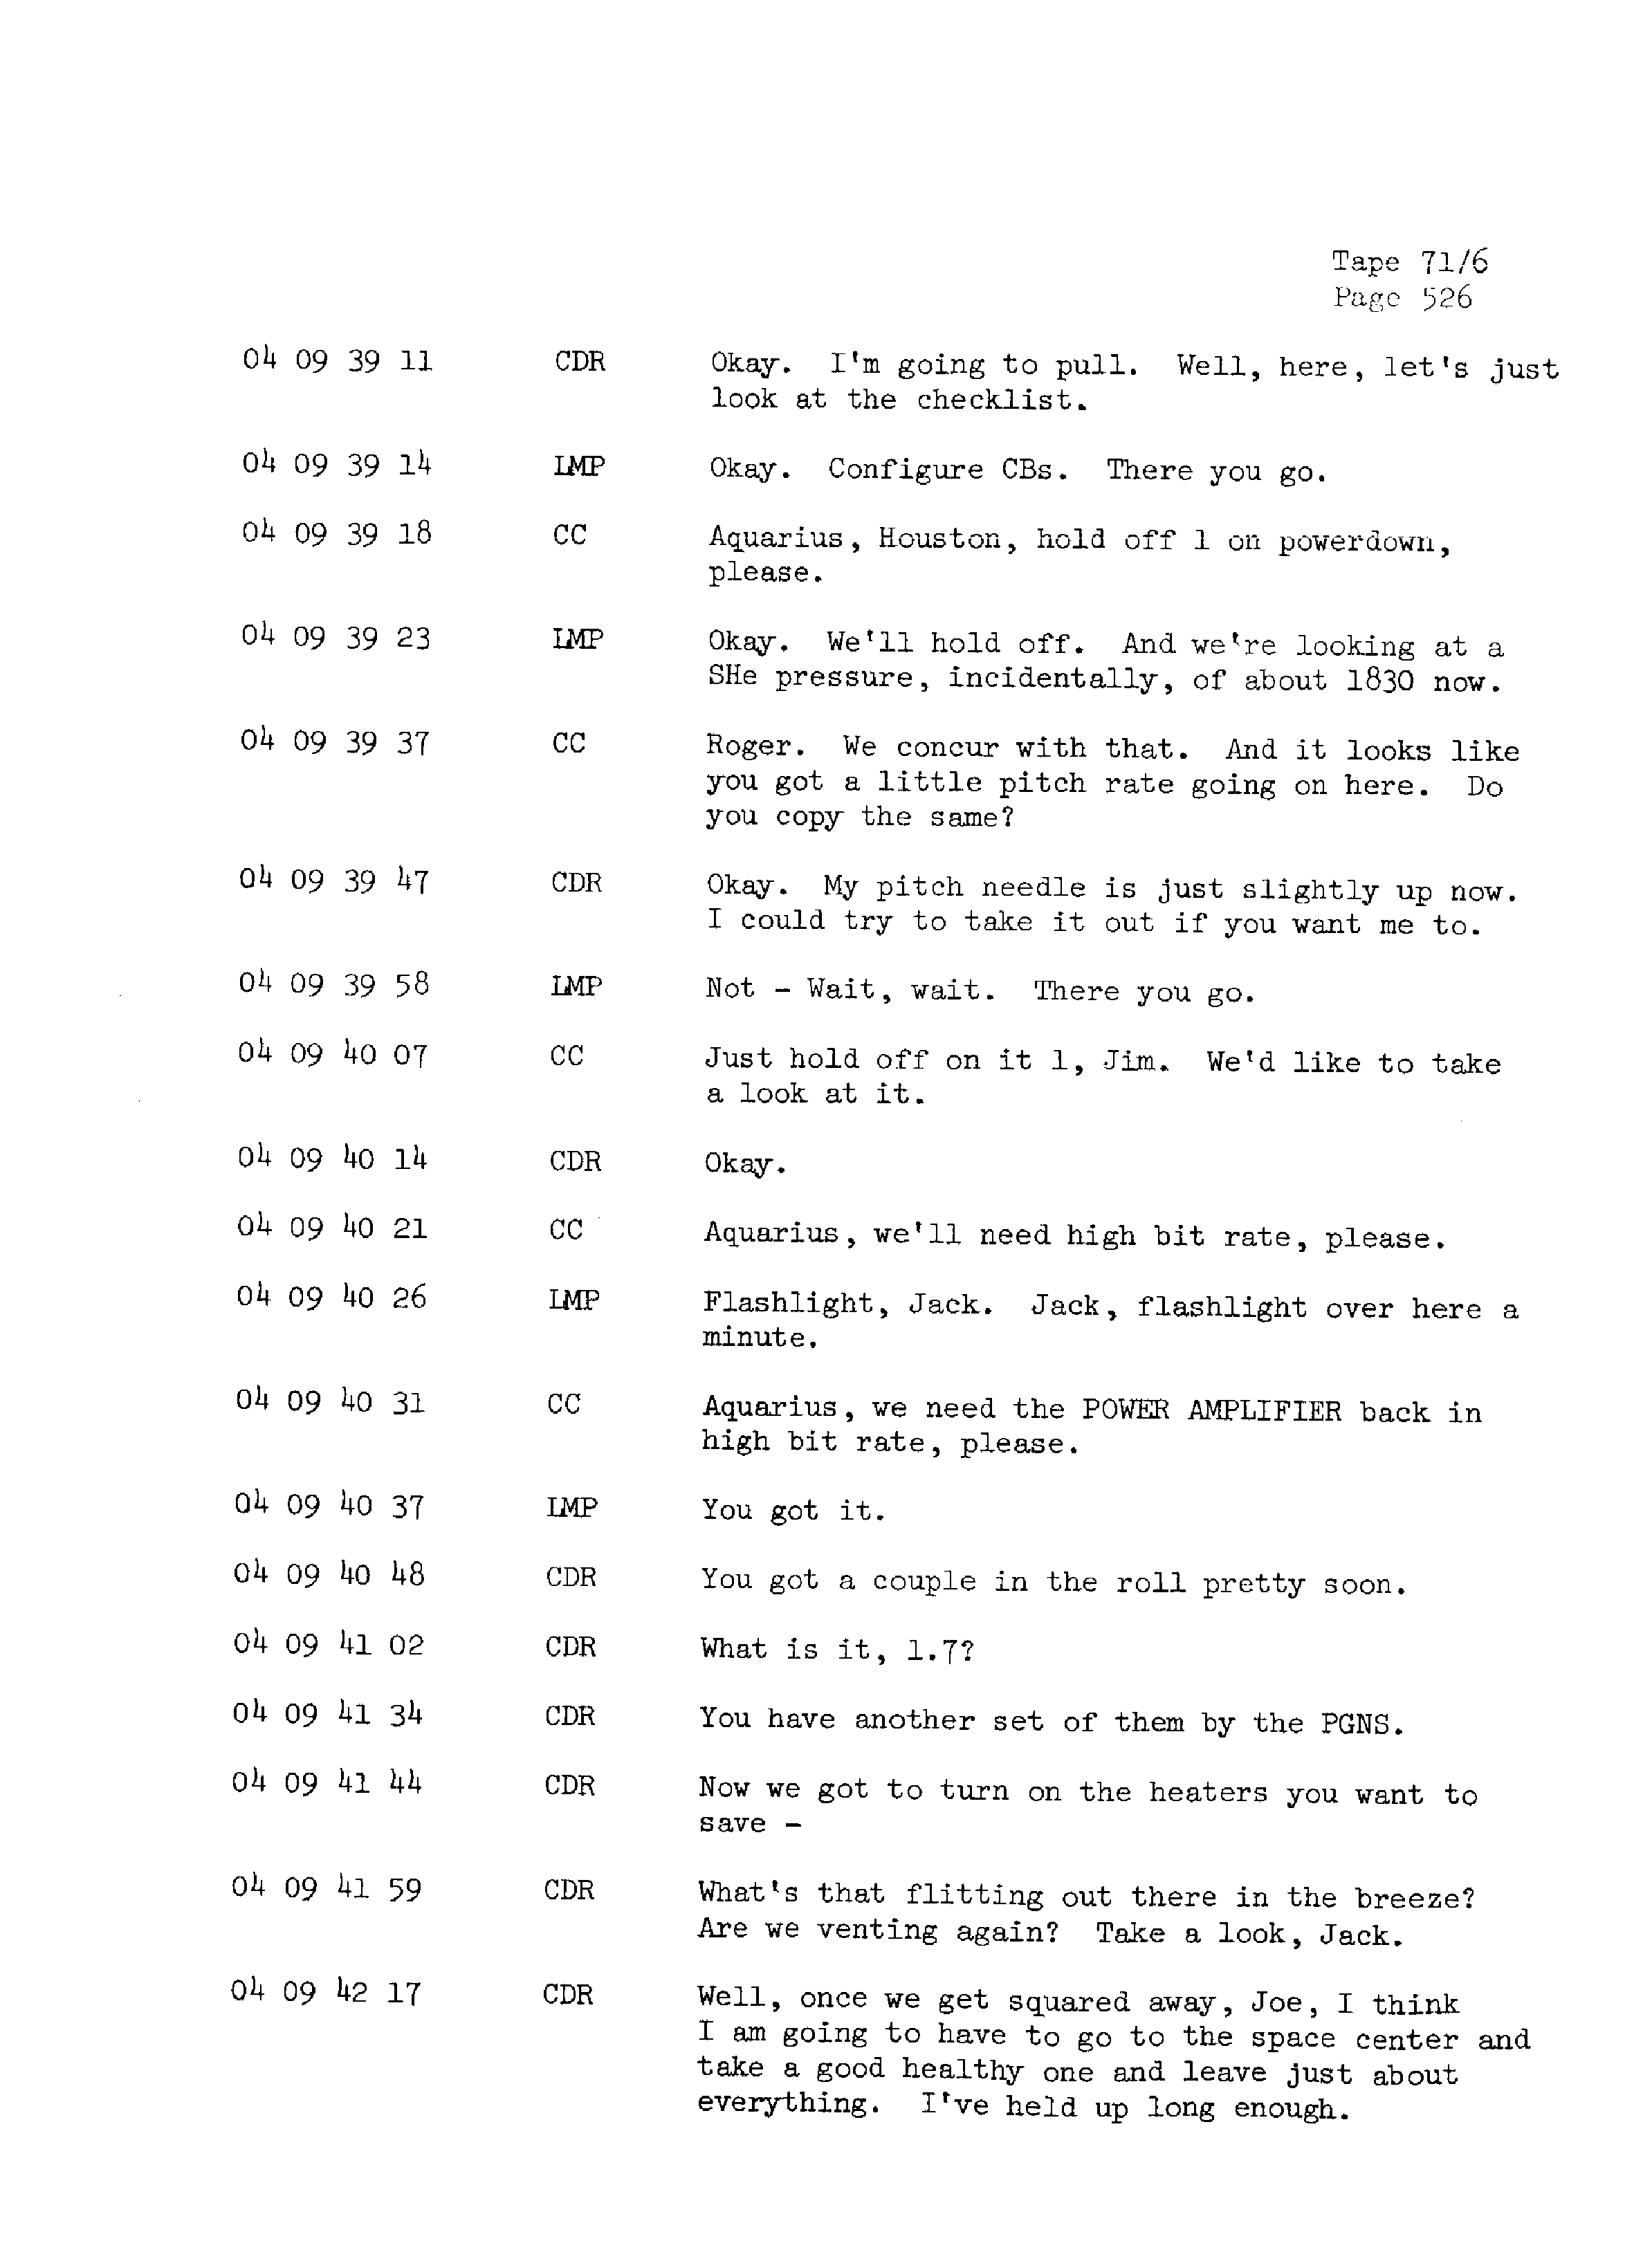 Page 533 of Apollo 13’s original transcript